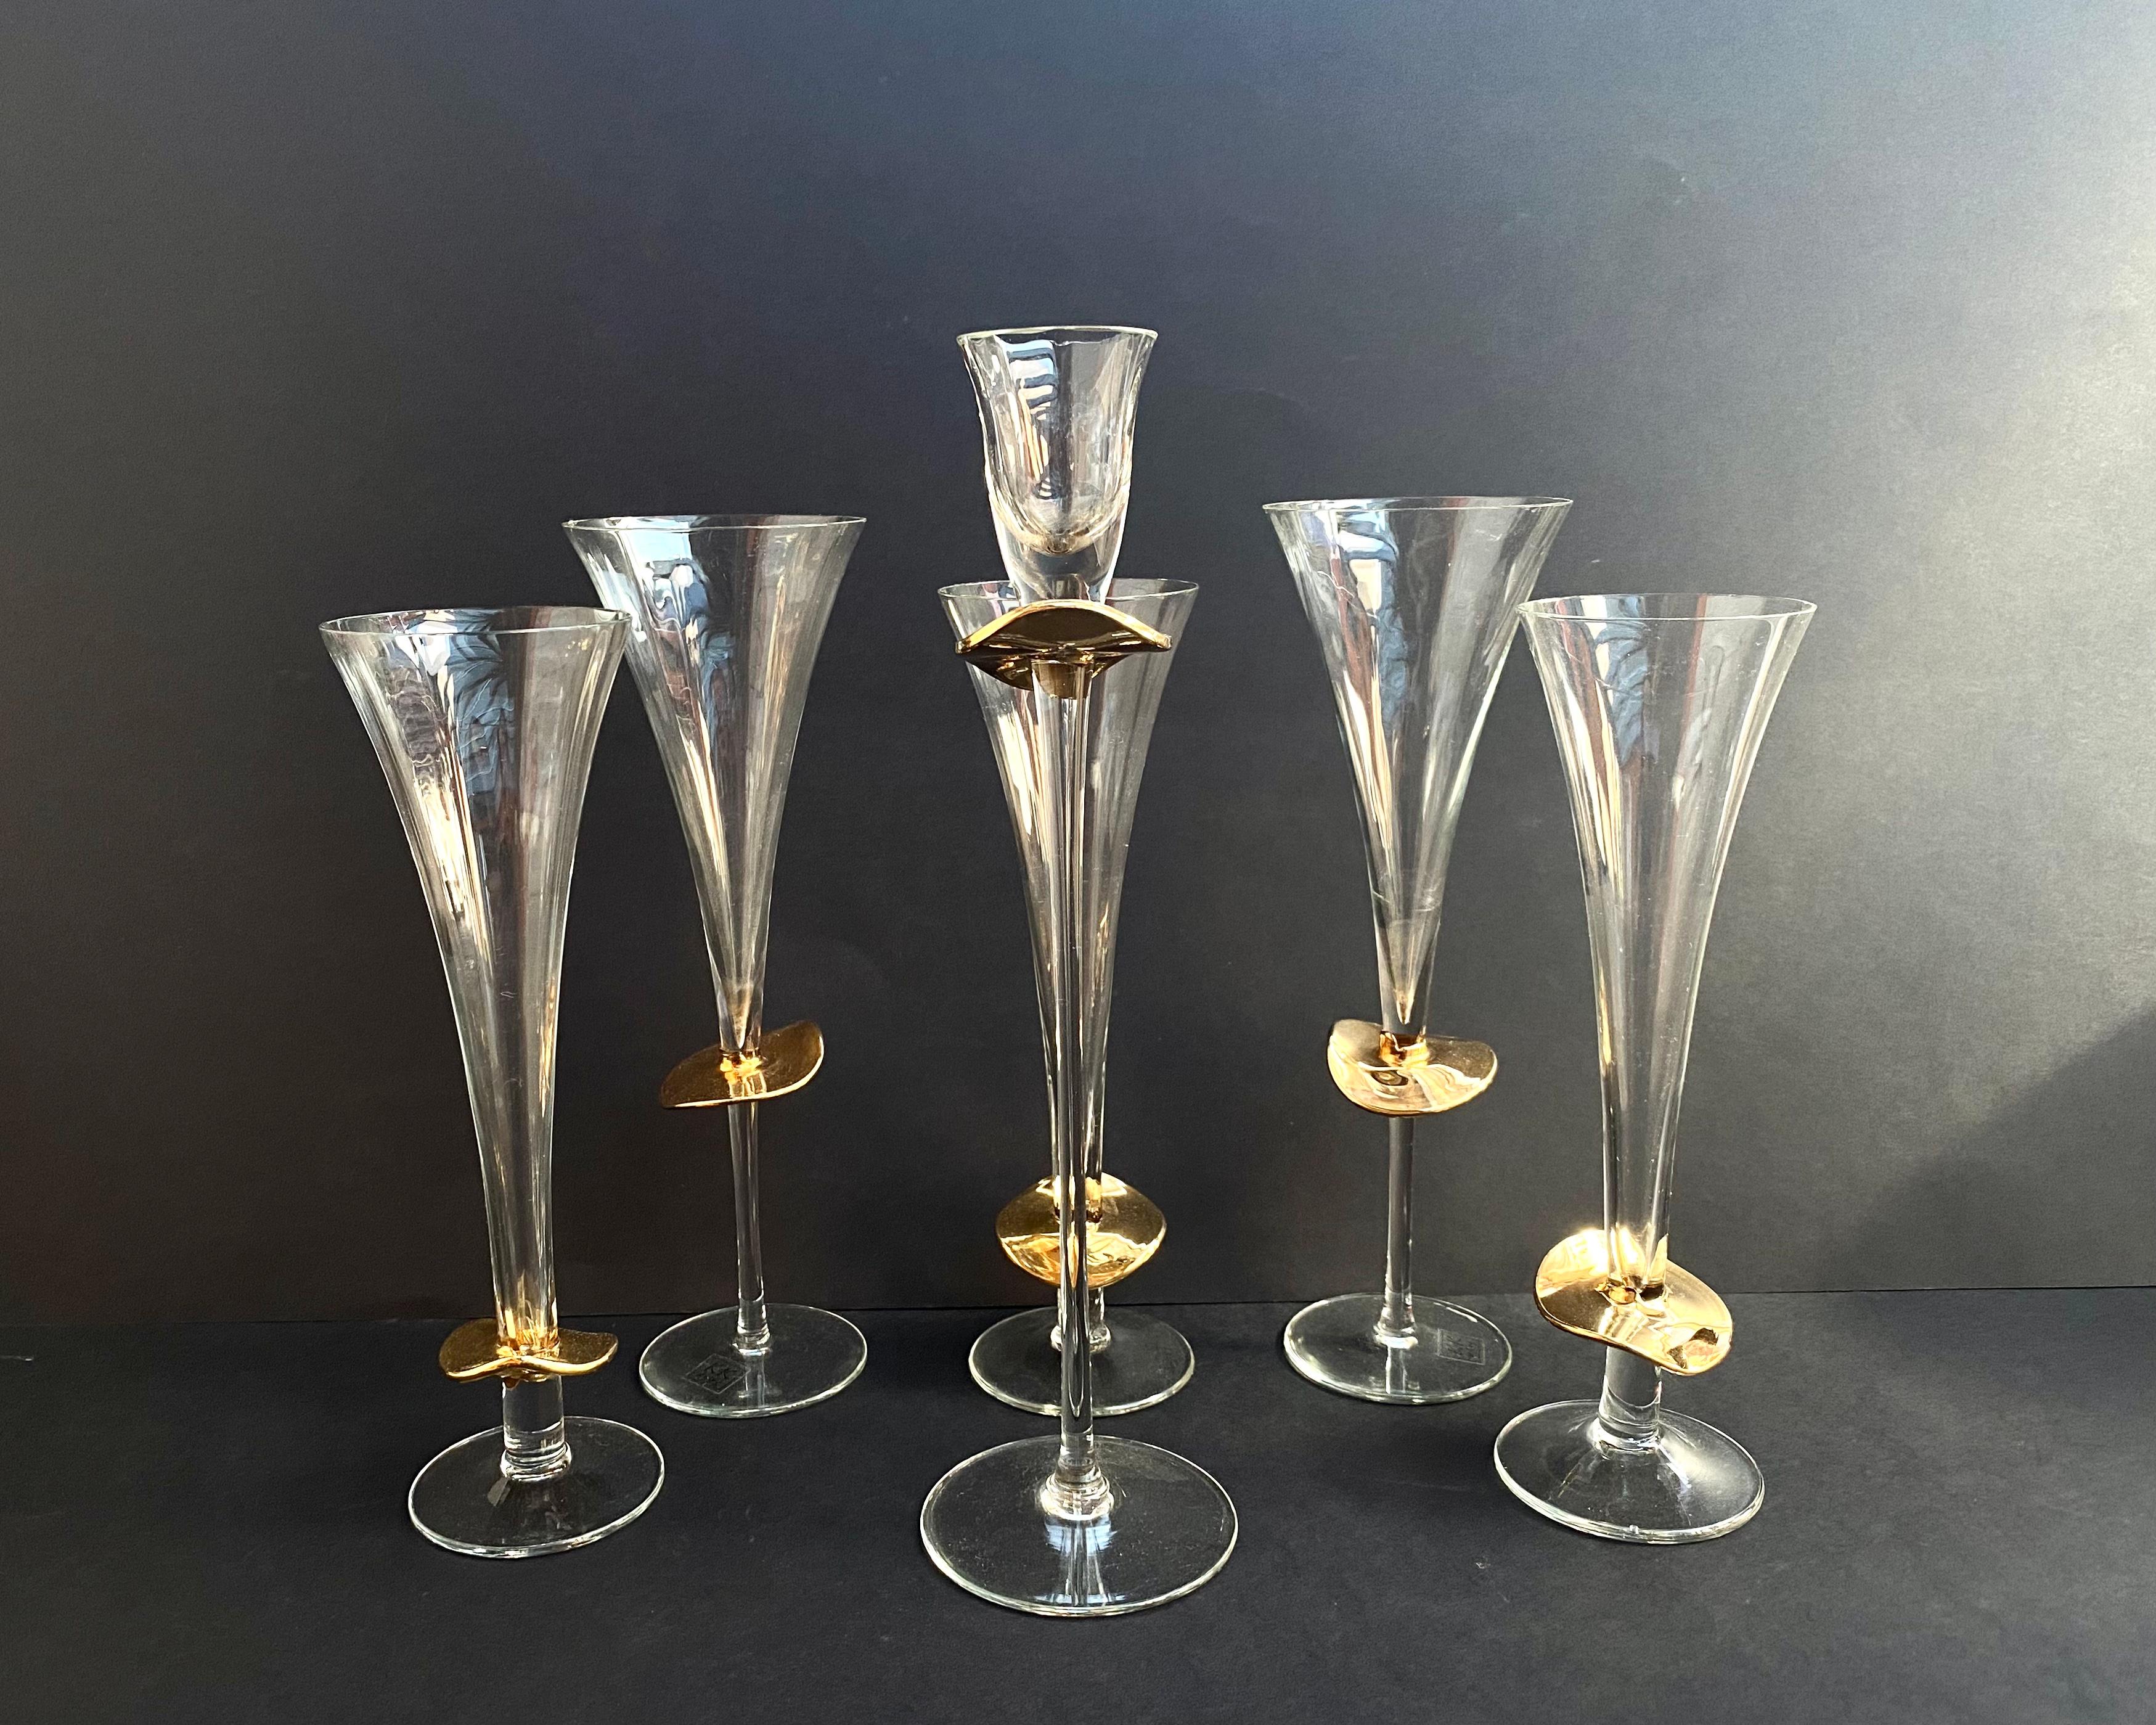 Wunderschönes, seltenes Set aus Kristallgläsern und Kerzenständer mit 24k Gold von der deutschen Manufaktur K&K Styling.

Die Produkte sind mit hohen Füßen ausgestattet und eignen sich zum Servieren von Champagner, Wein, Cognac oder anderen